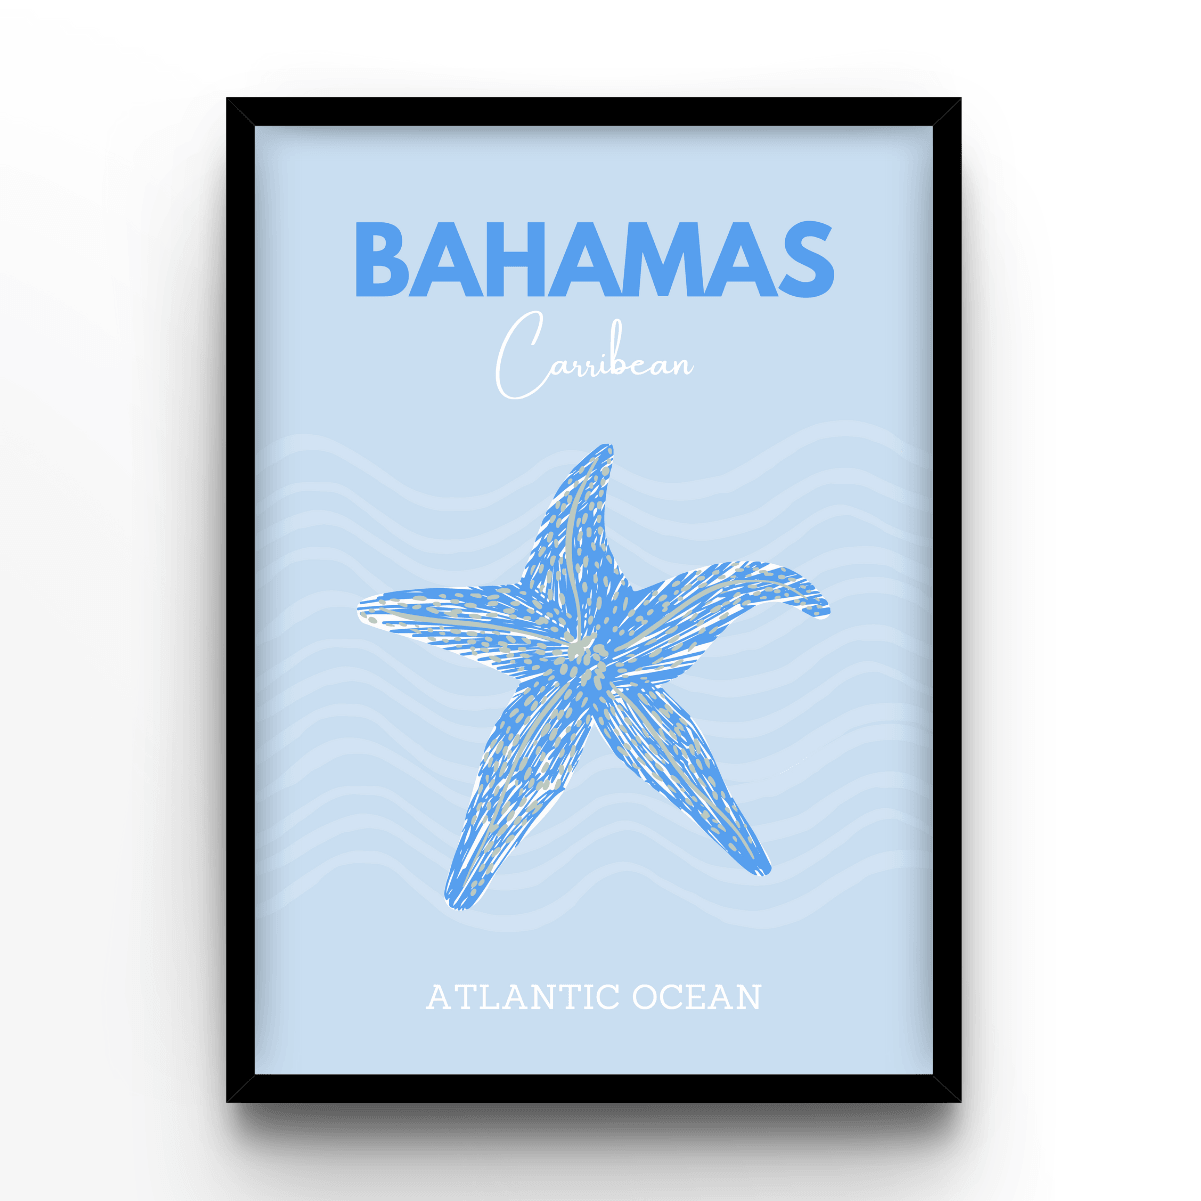 Bahamas - A4, A3, A2 Posters Base - Poster Print Shop / Art Prints / PostersBase